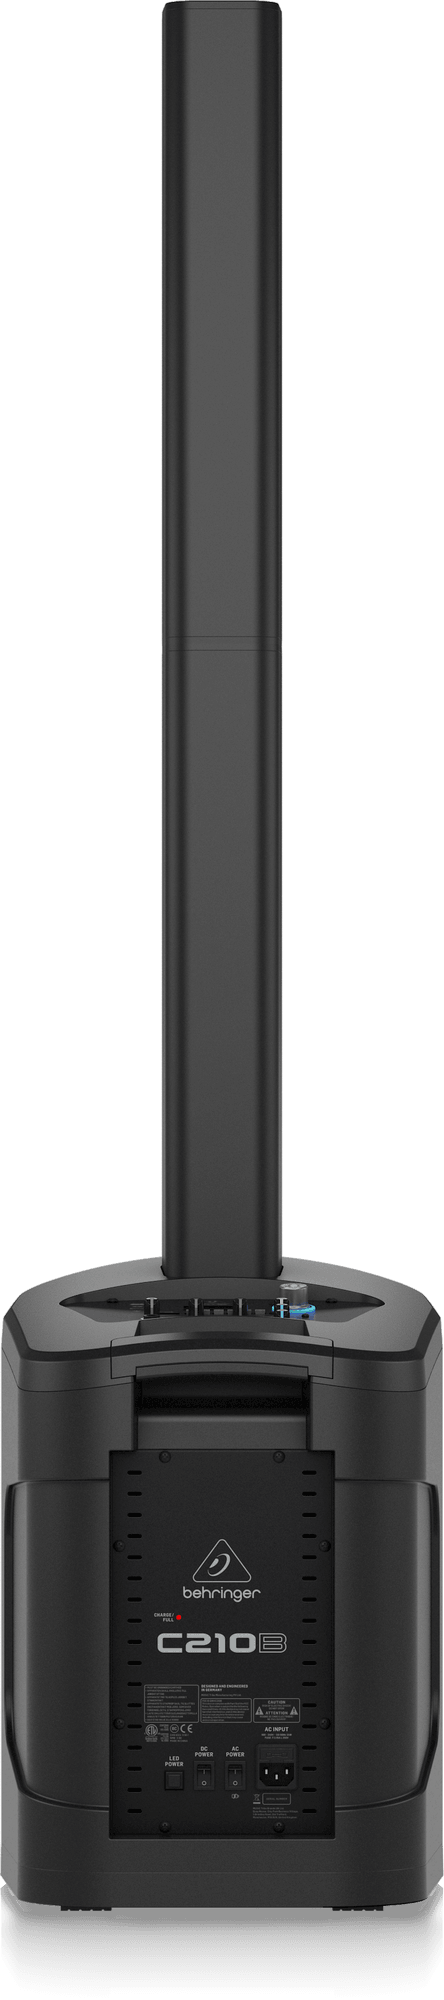 Behringer C210B 160W Active Column Speaker with Battery | BEHRINGER , Zoso Music